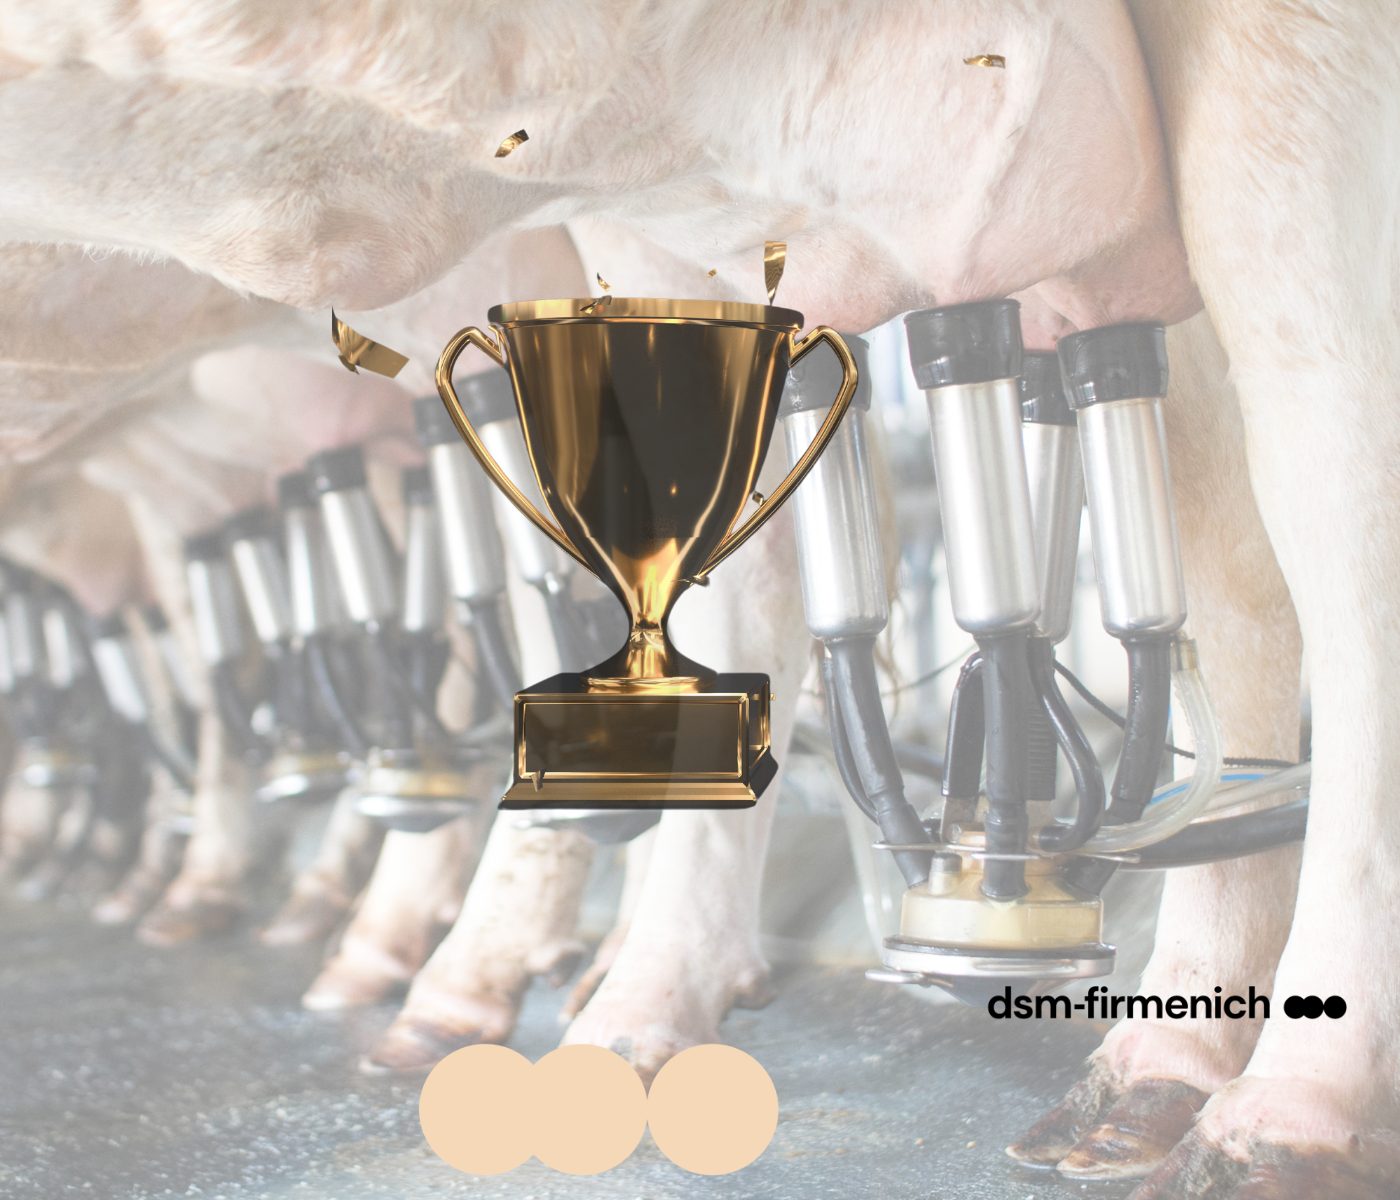 dsm-firmenich premia produtores pela qualidade do leite e sustentabilidade